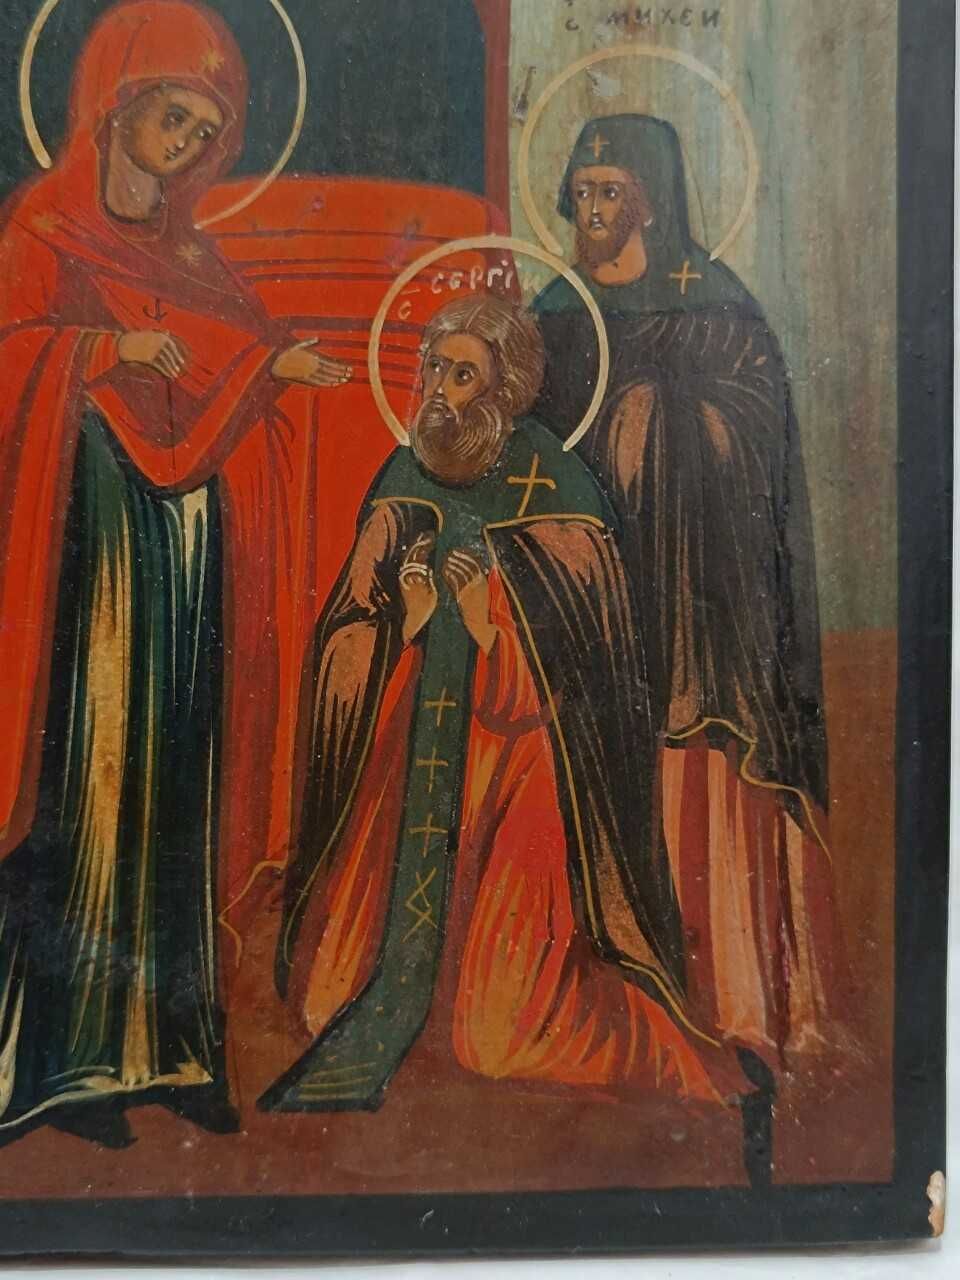 Icoana Videnia sf Sergei, cu Sf Petru Iuan Nicolae Maria, sec 19, doc